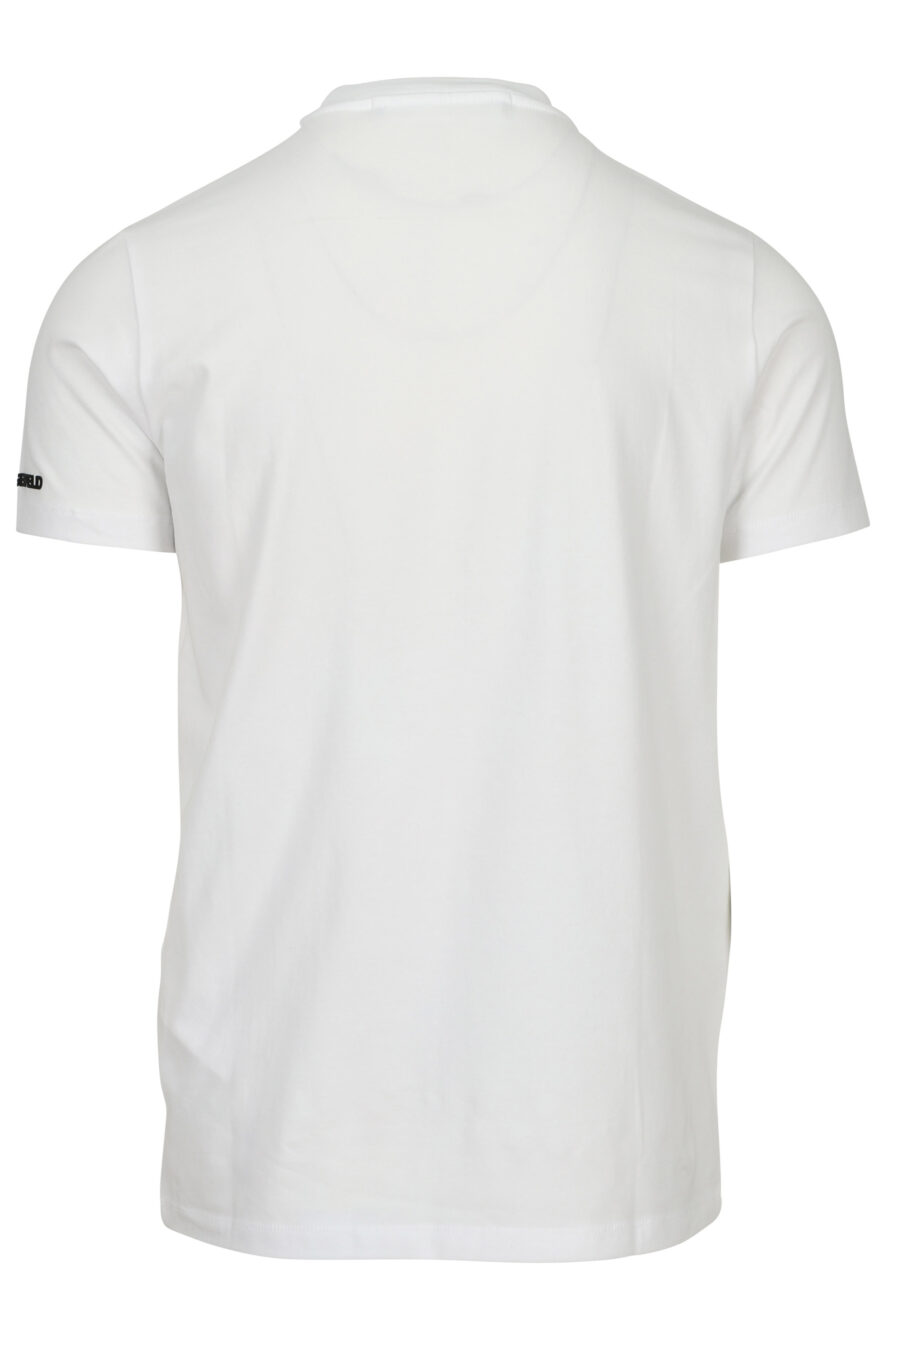 Camiseta blanca con maxilogo en goma "karl" en azul - 4062226788779 1